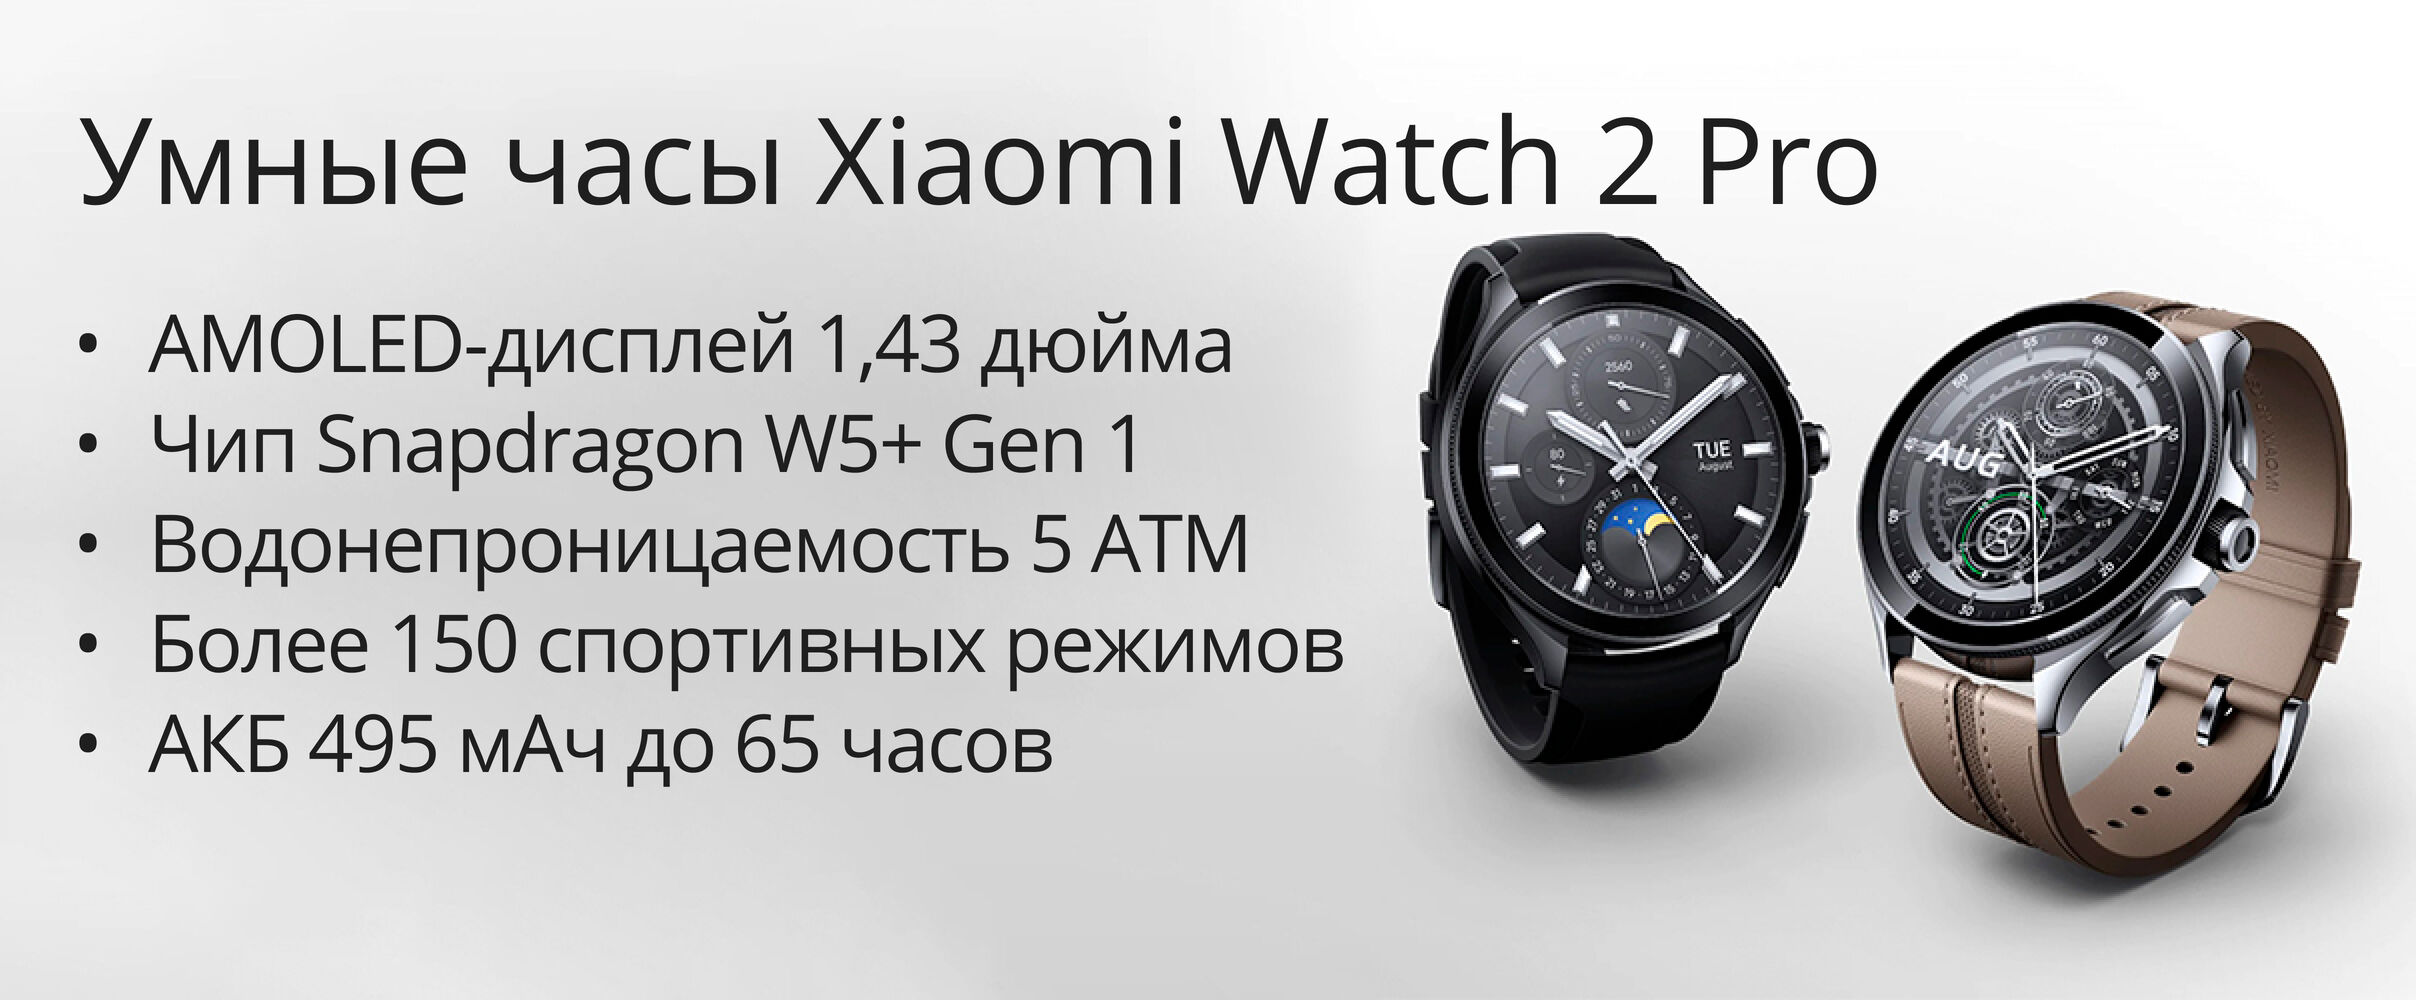 Купить Умные часы Xiaomi Watch 2 Pro в рассрочку, карта Халва. С доставкой  в Минске. Характеристики, отзывы, обзор.